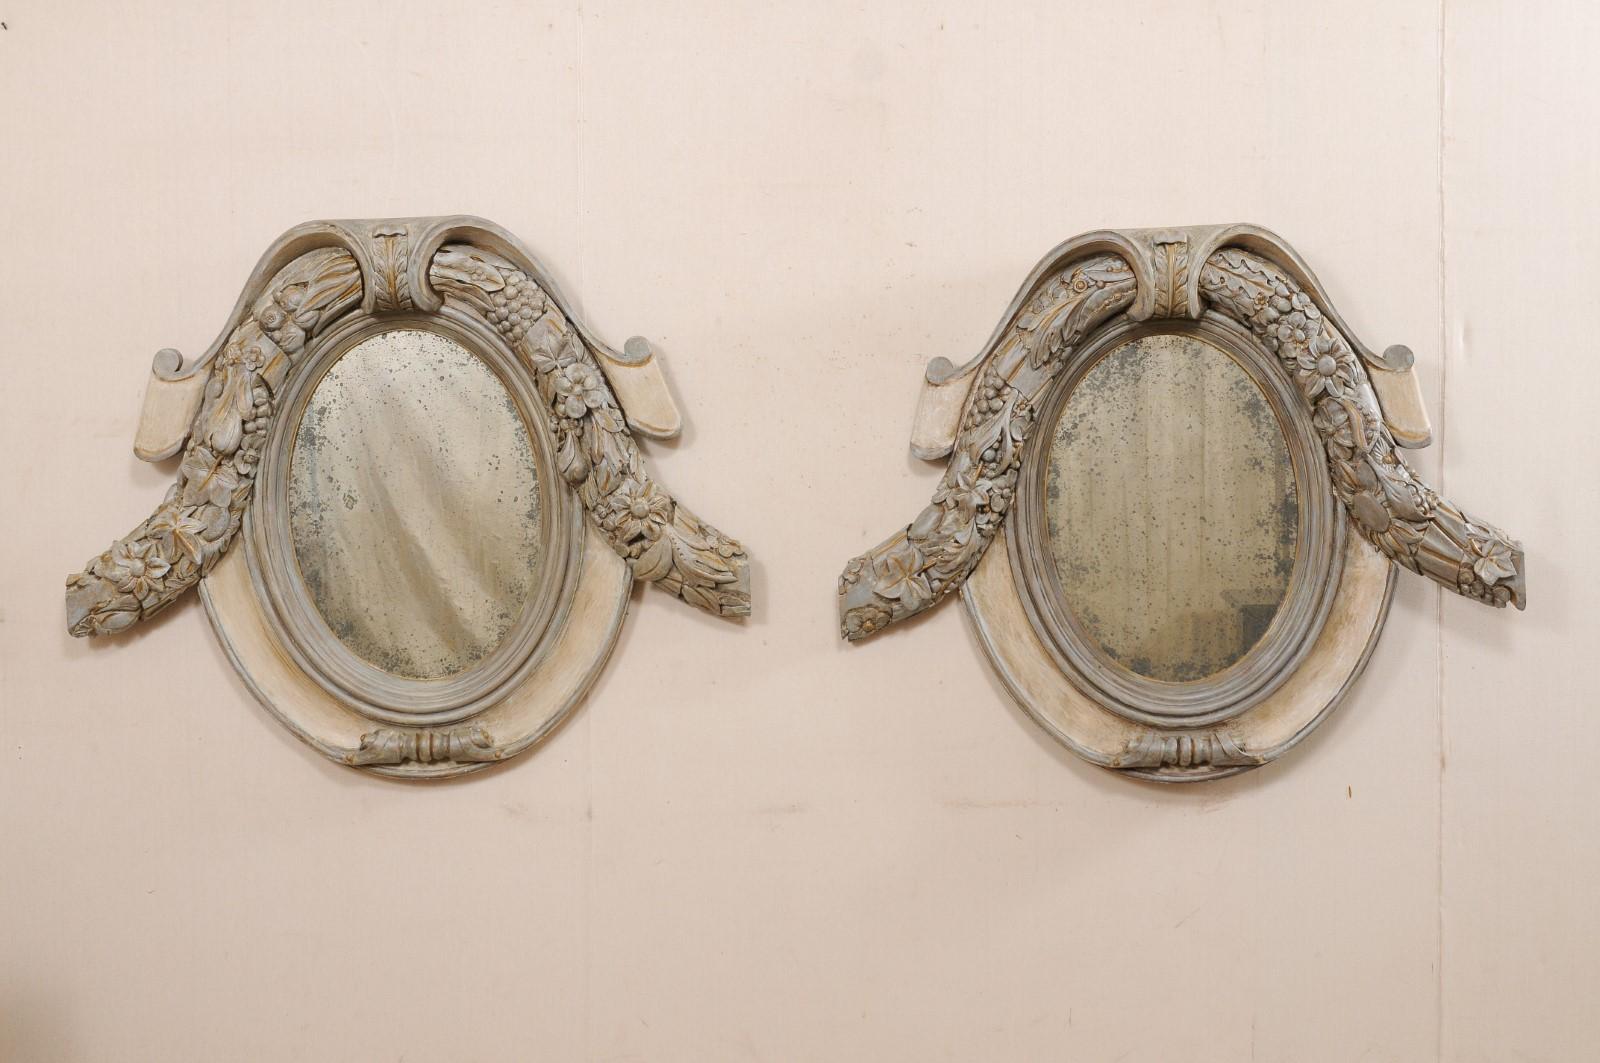 Une paire de miroirs français sculptés de cartouches et de fleurs du début du 20e siècle. Cette paire de miroirs anciens provenant de France a des cadres magnifiquement sculptés inspirés d'un cartouche, de forme ovale pour la plupart, avec une